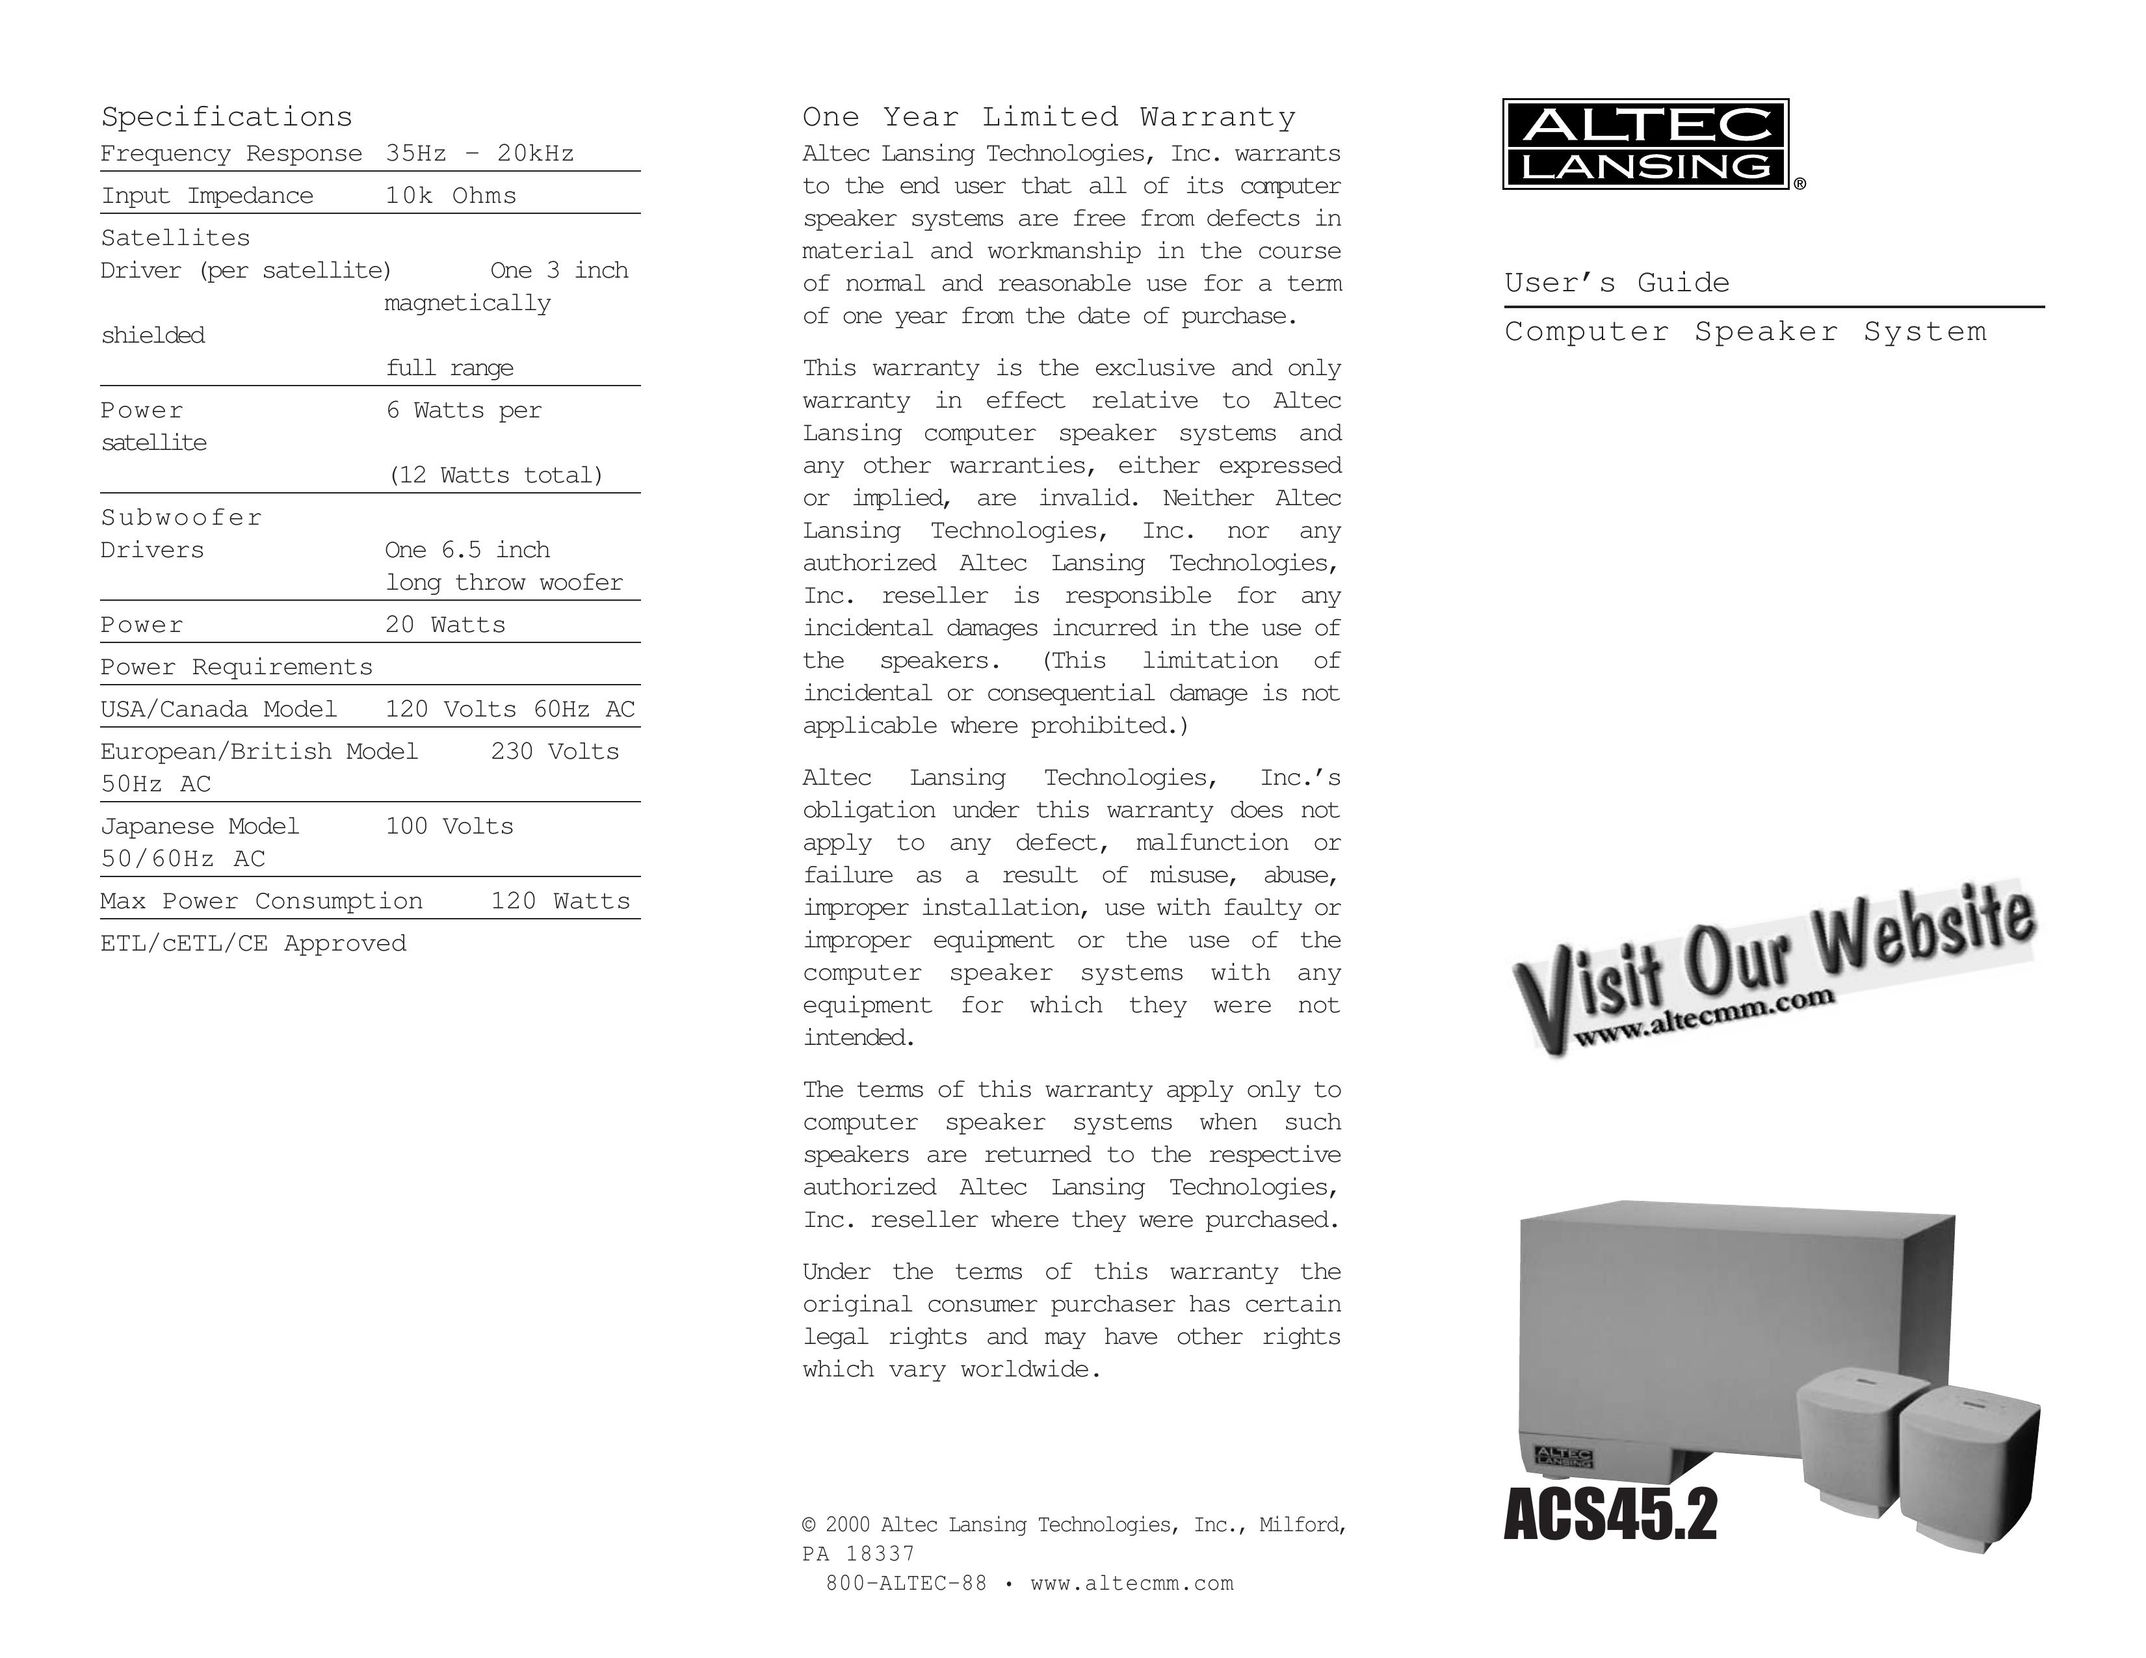 Altec Lansing ACS45.2 Speaker System User Manual